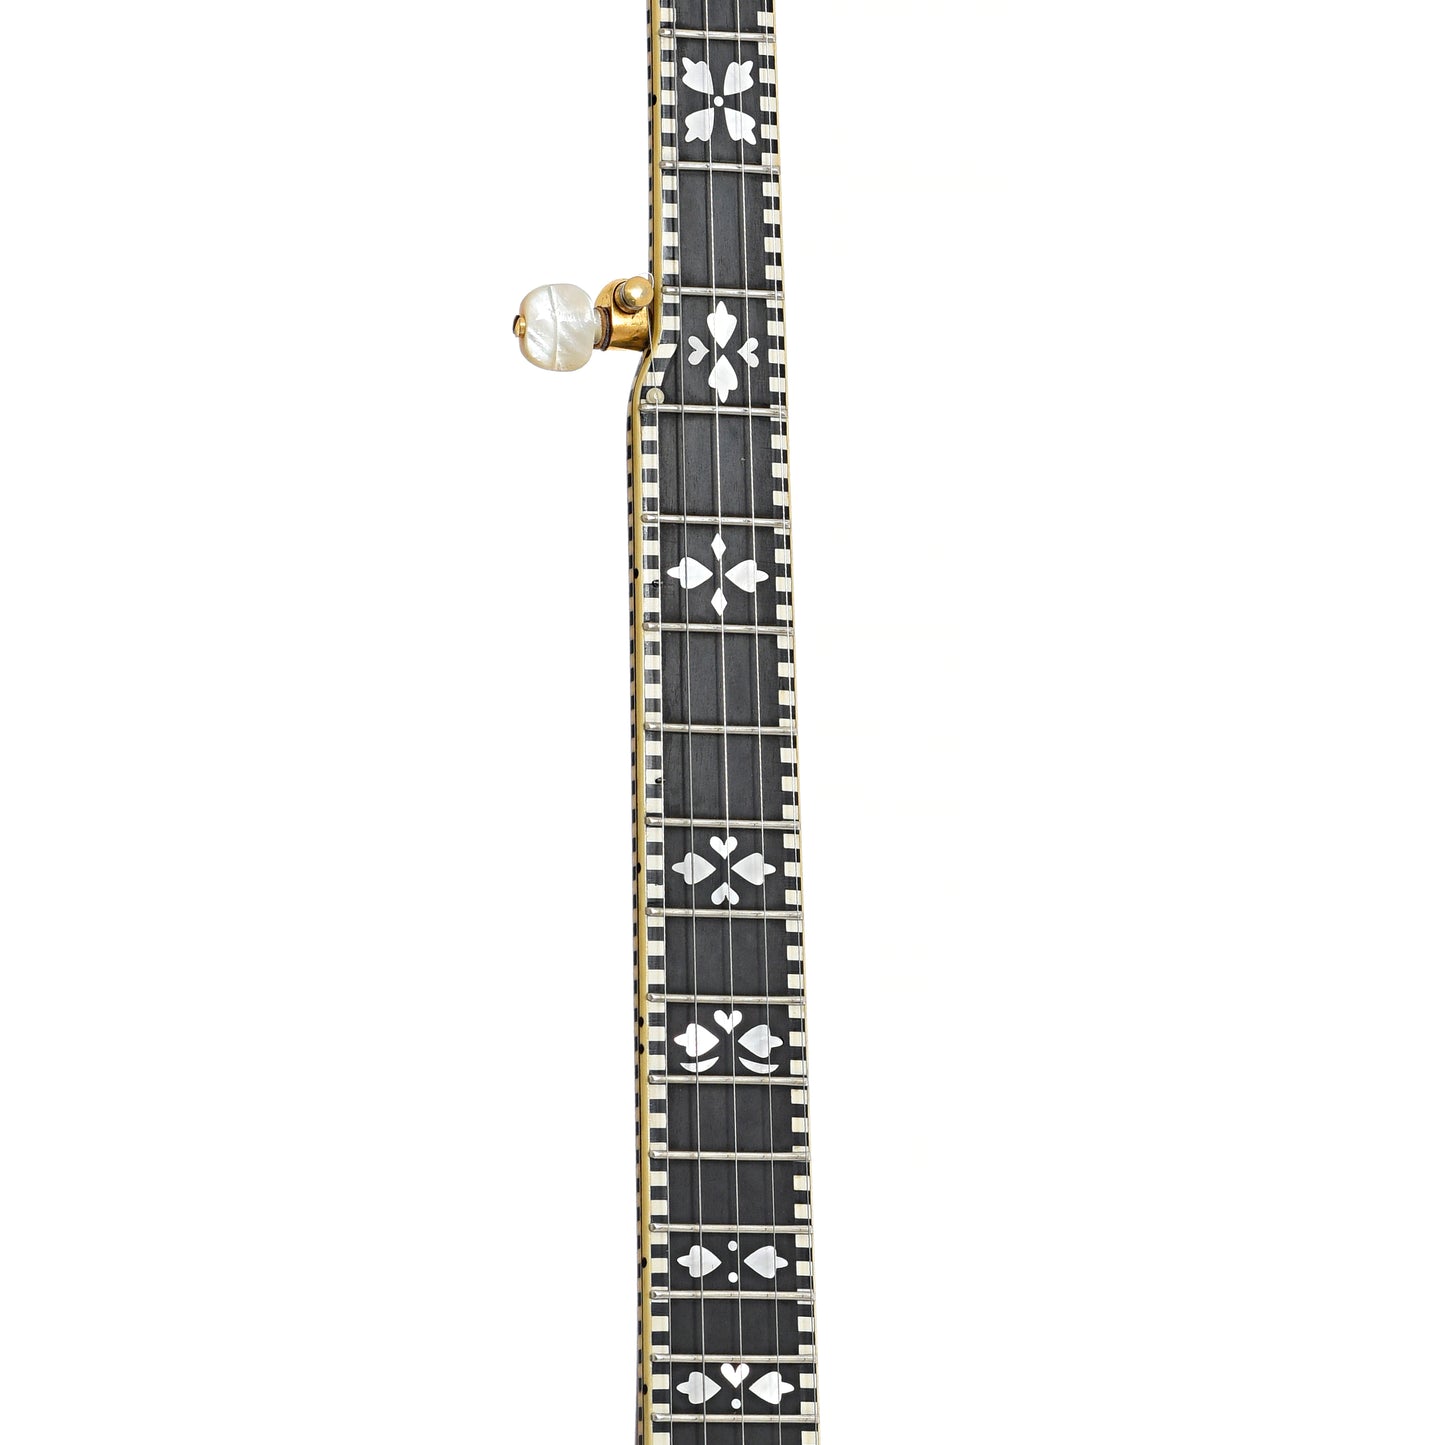 Fretboard of Gibson TB-6 Checkerboard Conversion Resonator Banjo (1928)